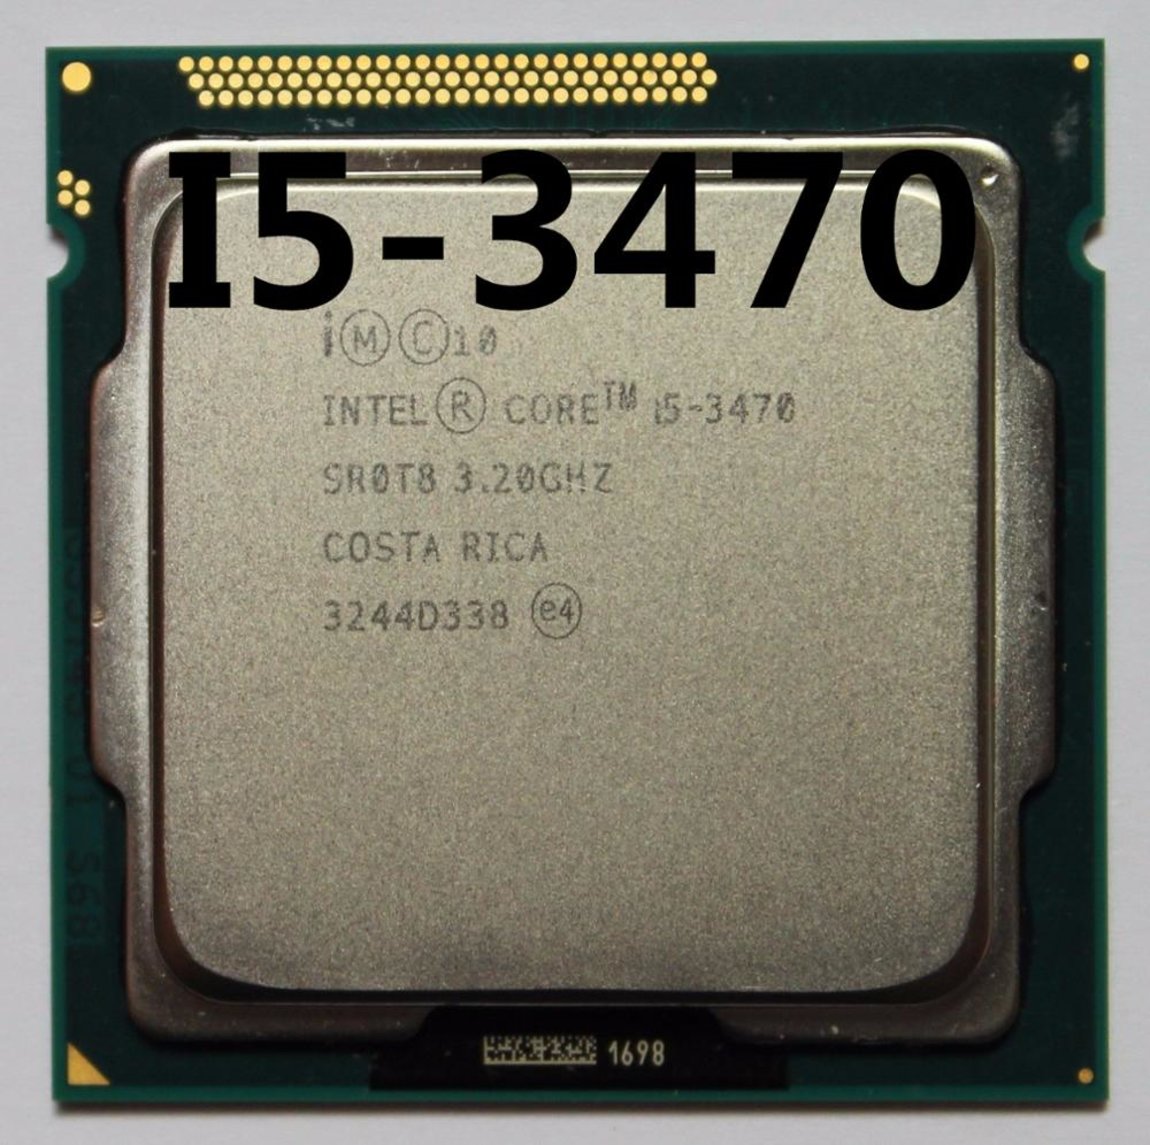 Интел i5 3470. Intel Core i5 3470 3.2GHZ. Процессор Intel Core i5-3470 3.2GHZ lga1155. Процессор Intel Core i5 3470 LGA 1155. Процессор: Intel Core i5 3470 @ 3.2 ГГЦ (четырехъядерный).